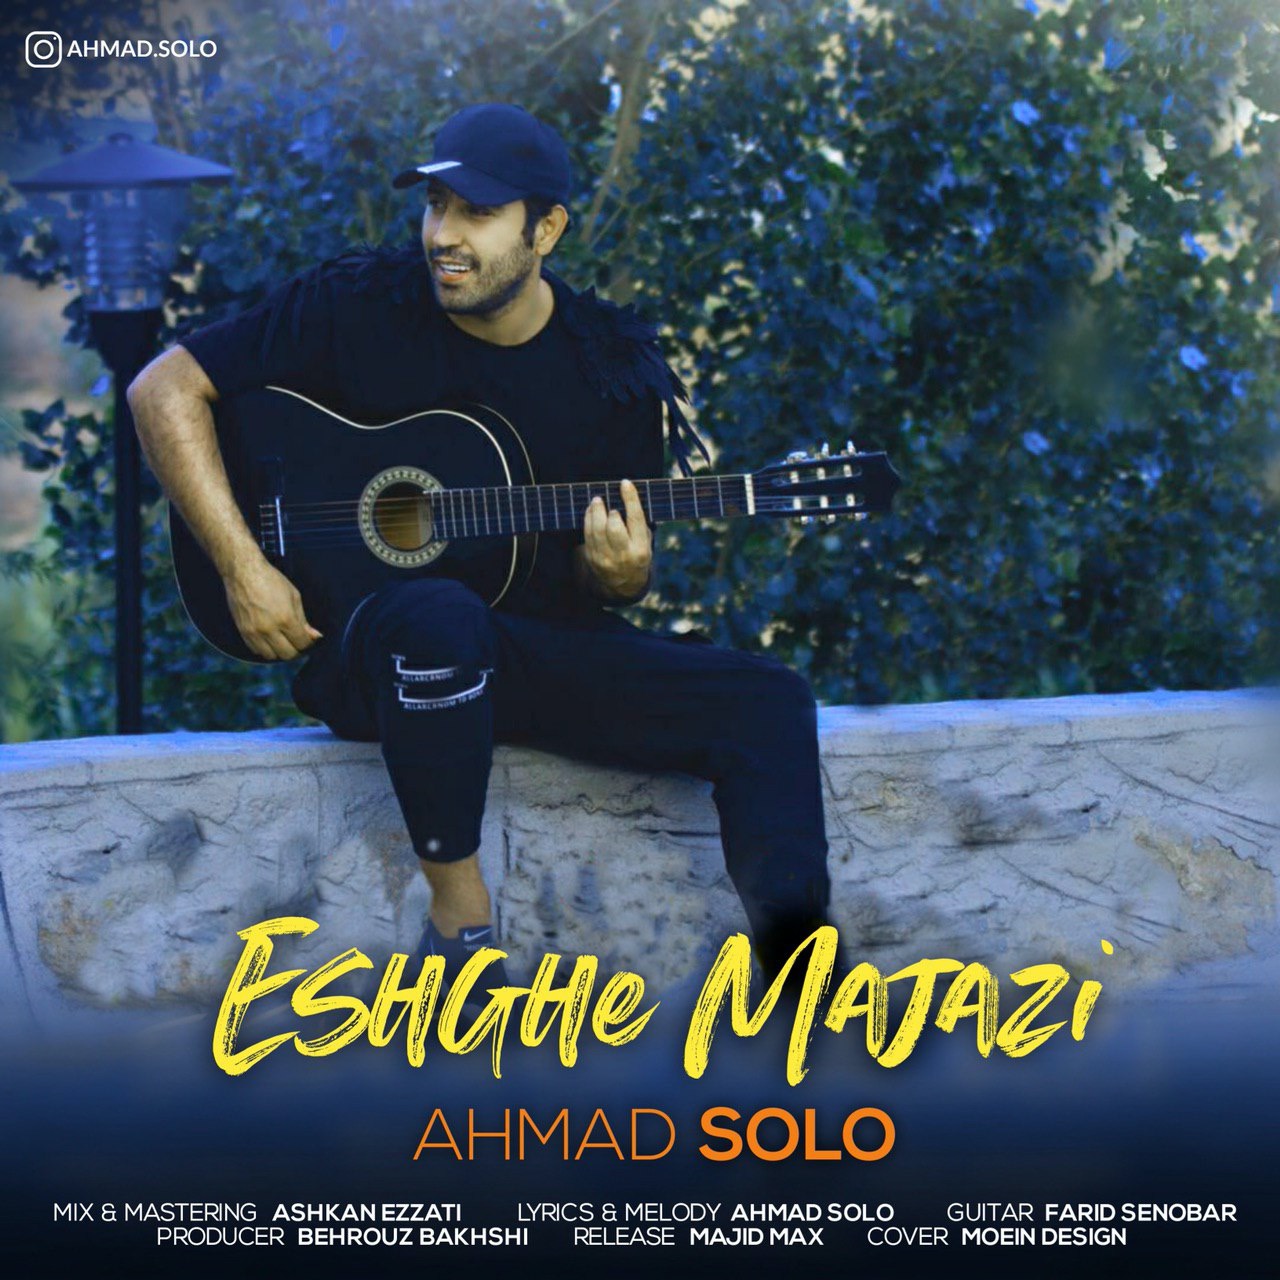  دانلود آهنگ جدید احمد سلو - عشق مجازی | Download New Music By Ahmad Solo - Eshghe Majazi